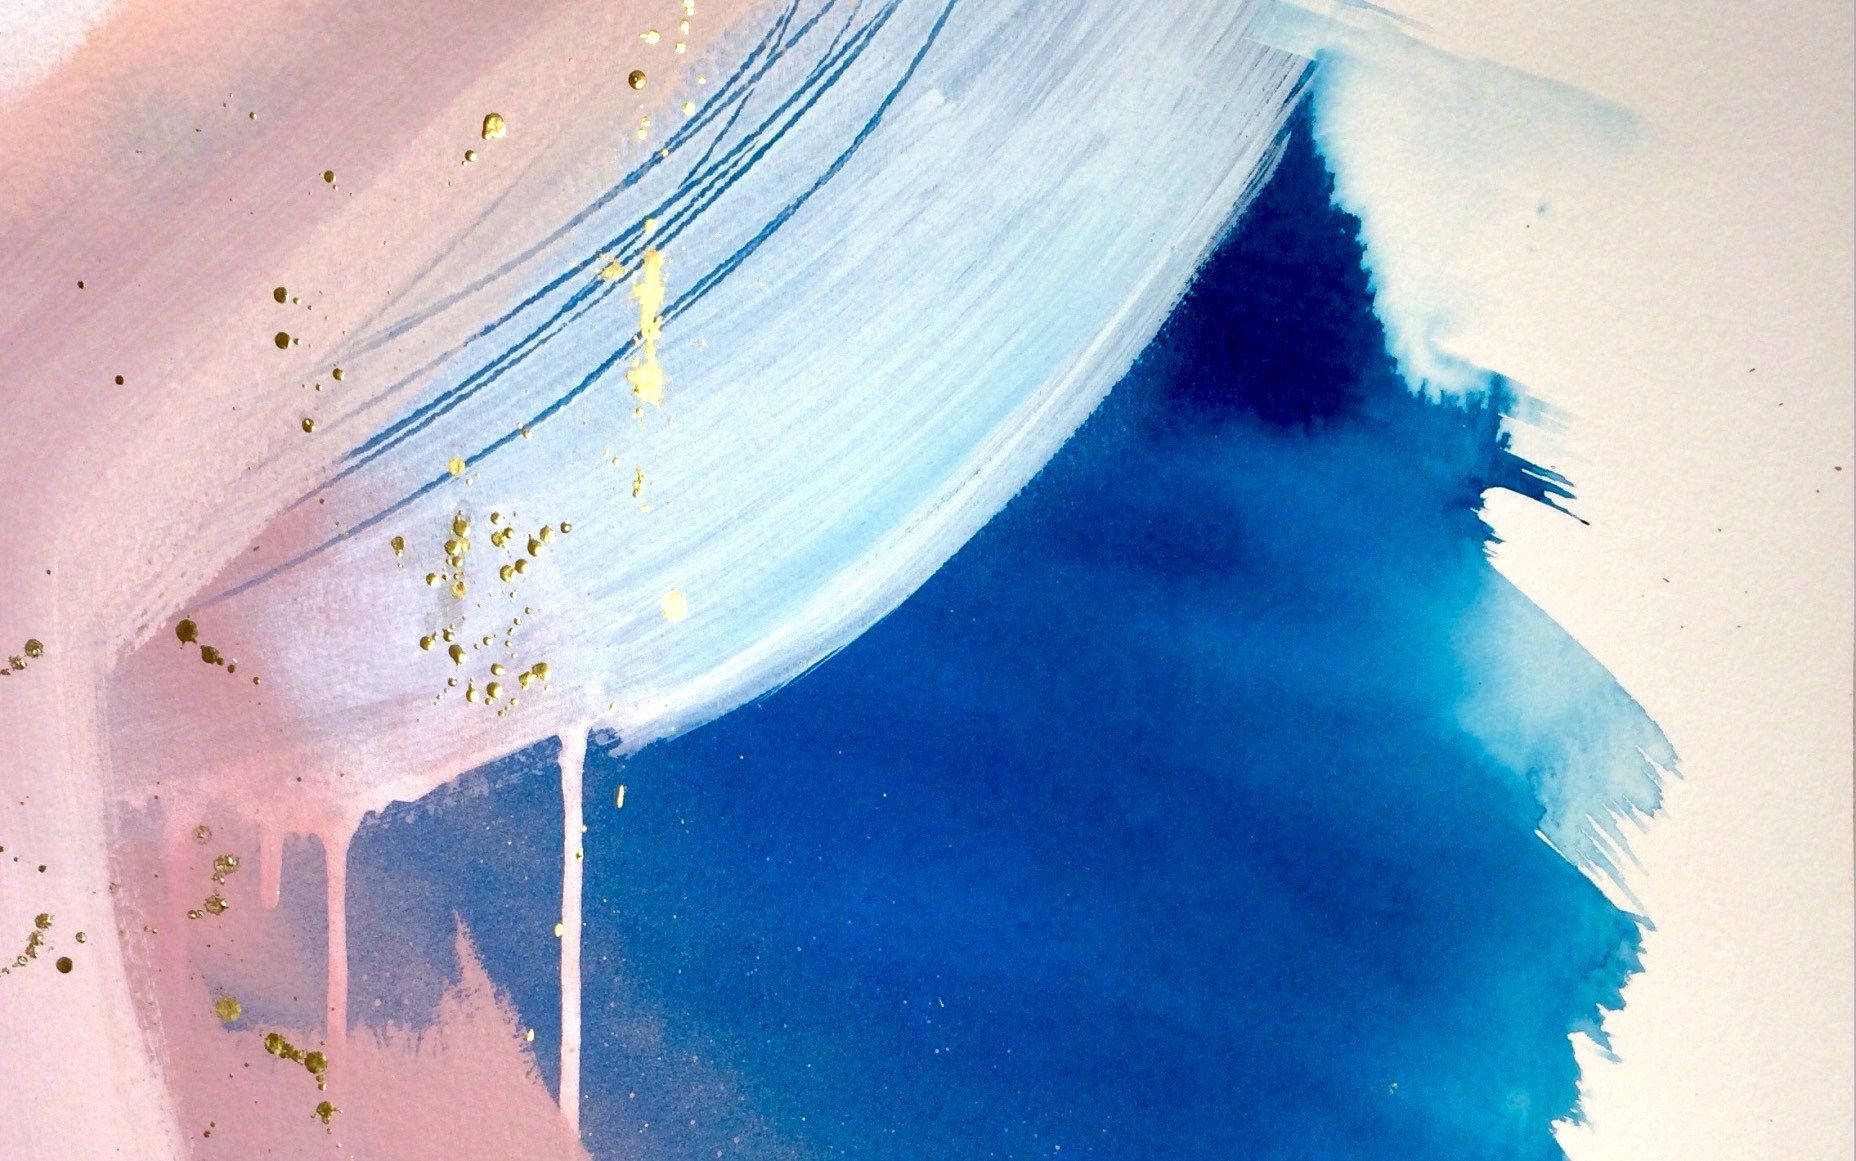 Creaun Espacio Relajante Con Esta Cortina De Acuarela Azul. Fondo de pantalla